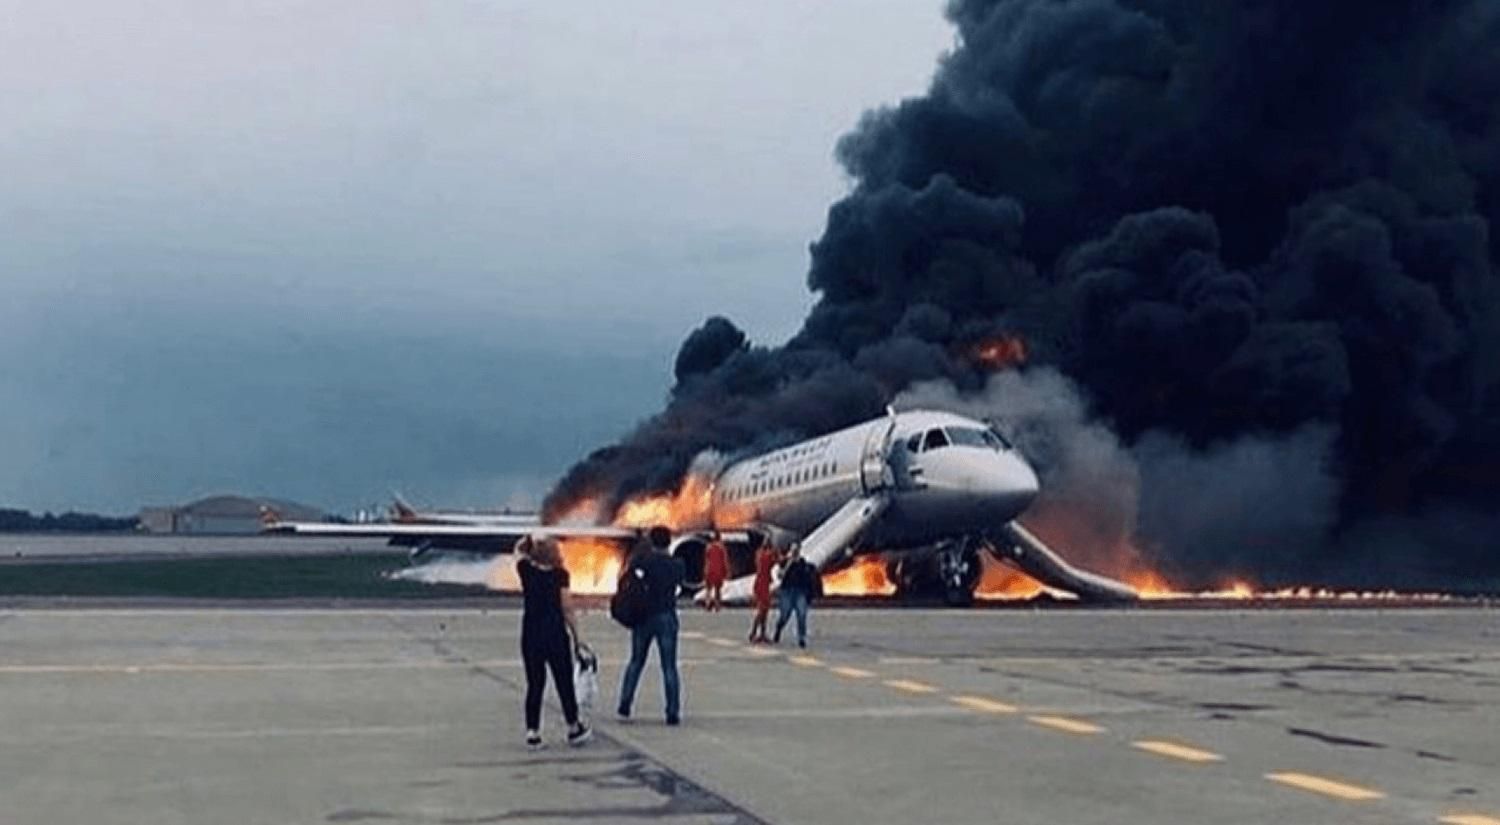 Паника в дыму, – как проходила эвакуация людей из горящего самолета в Москве